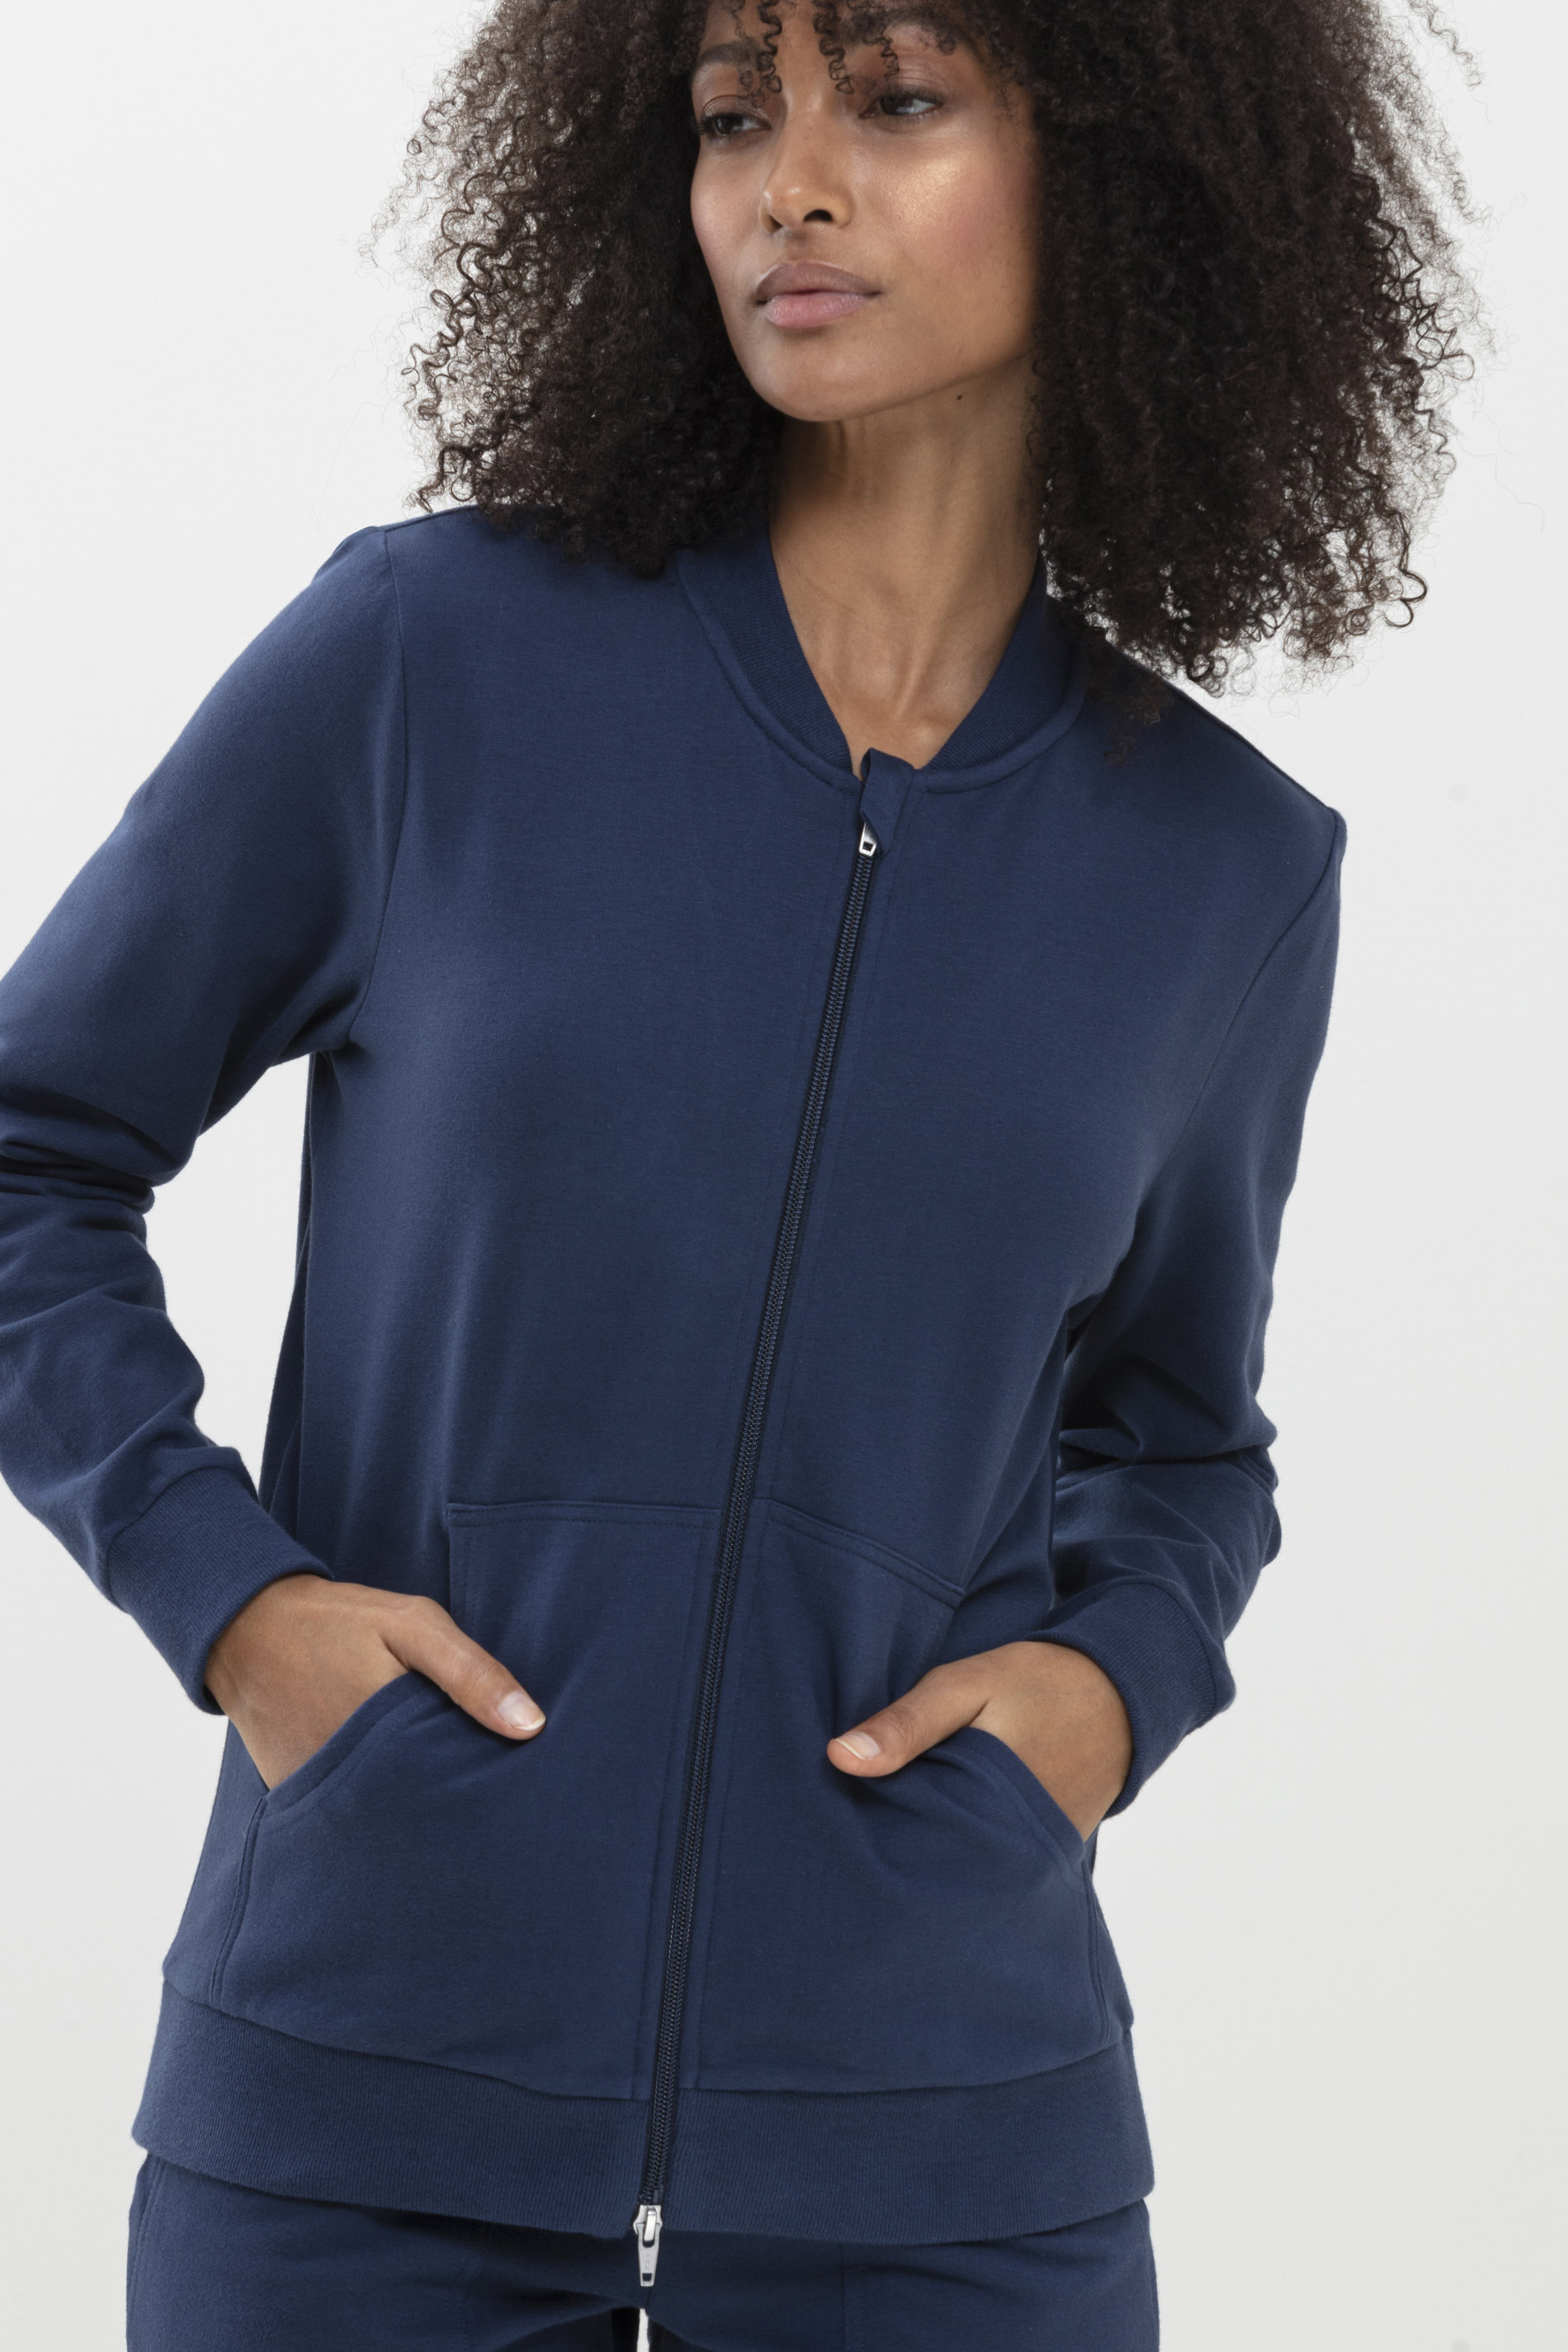 Zip jacket New Blue Serie Mia Festlegen | mey®